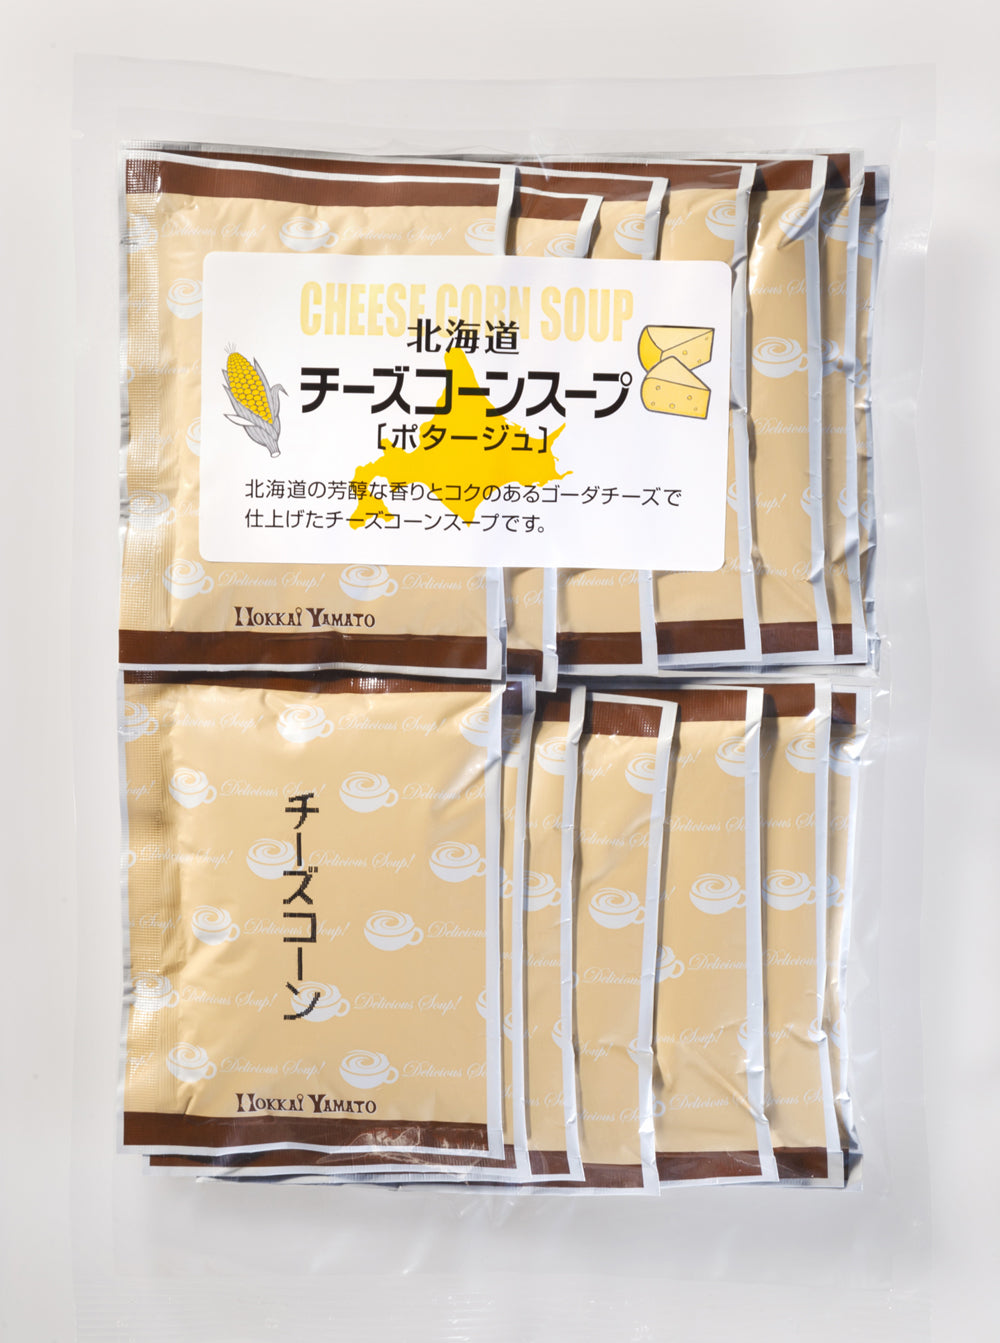 【送料無料】北海道チーズコーンスープ15袋入【メール便代引不可】